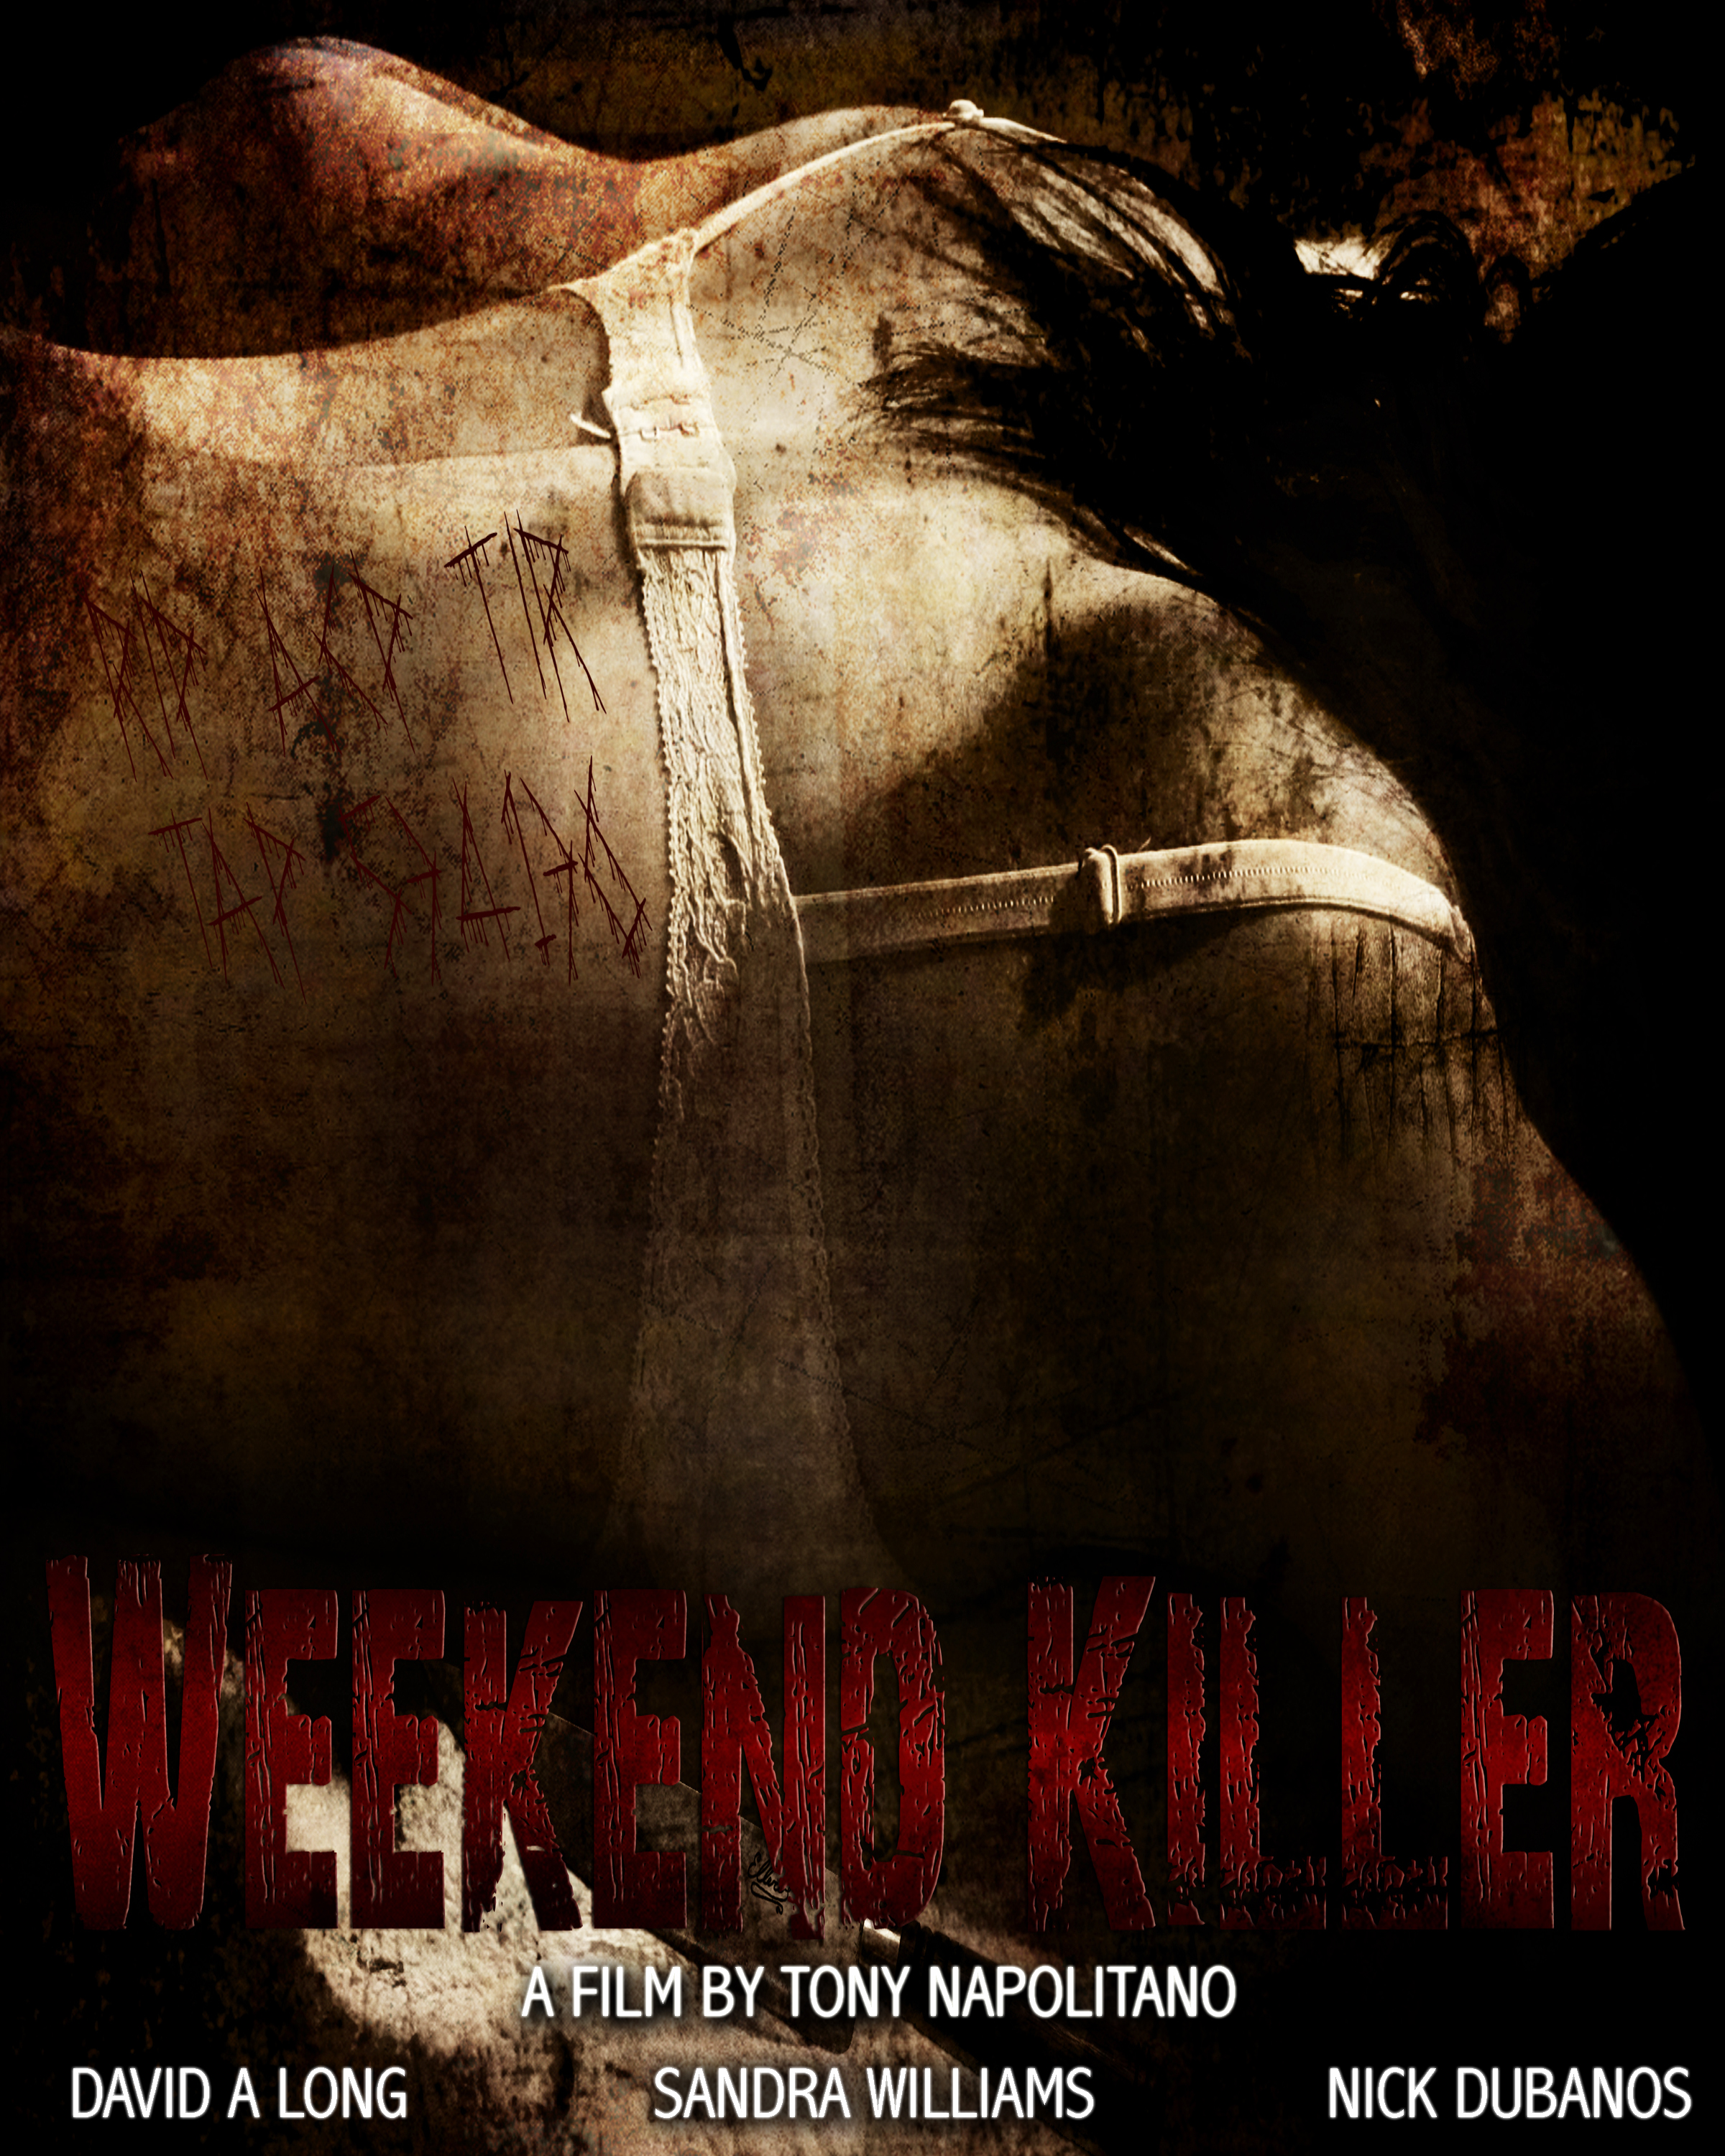 Weekend Killer